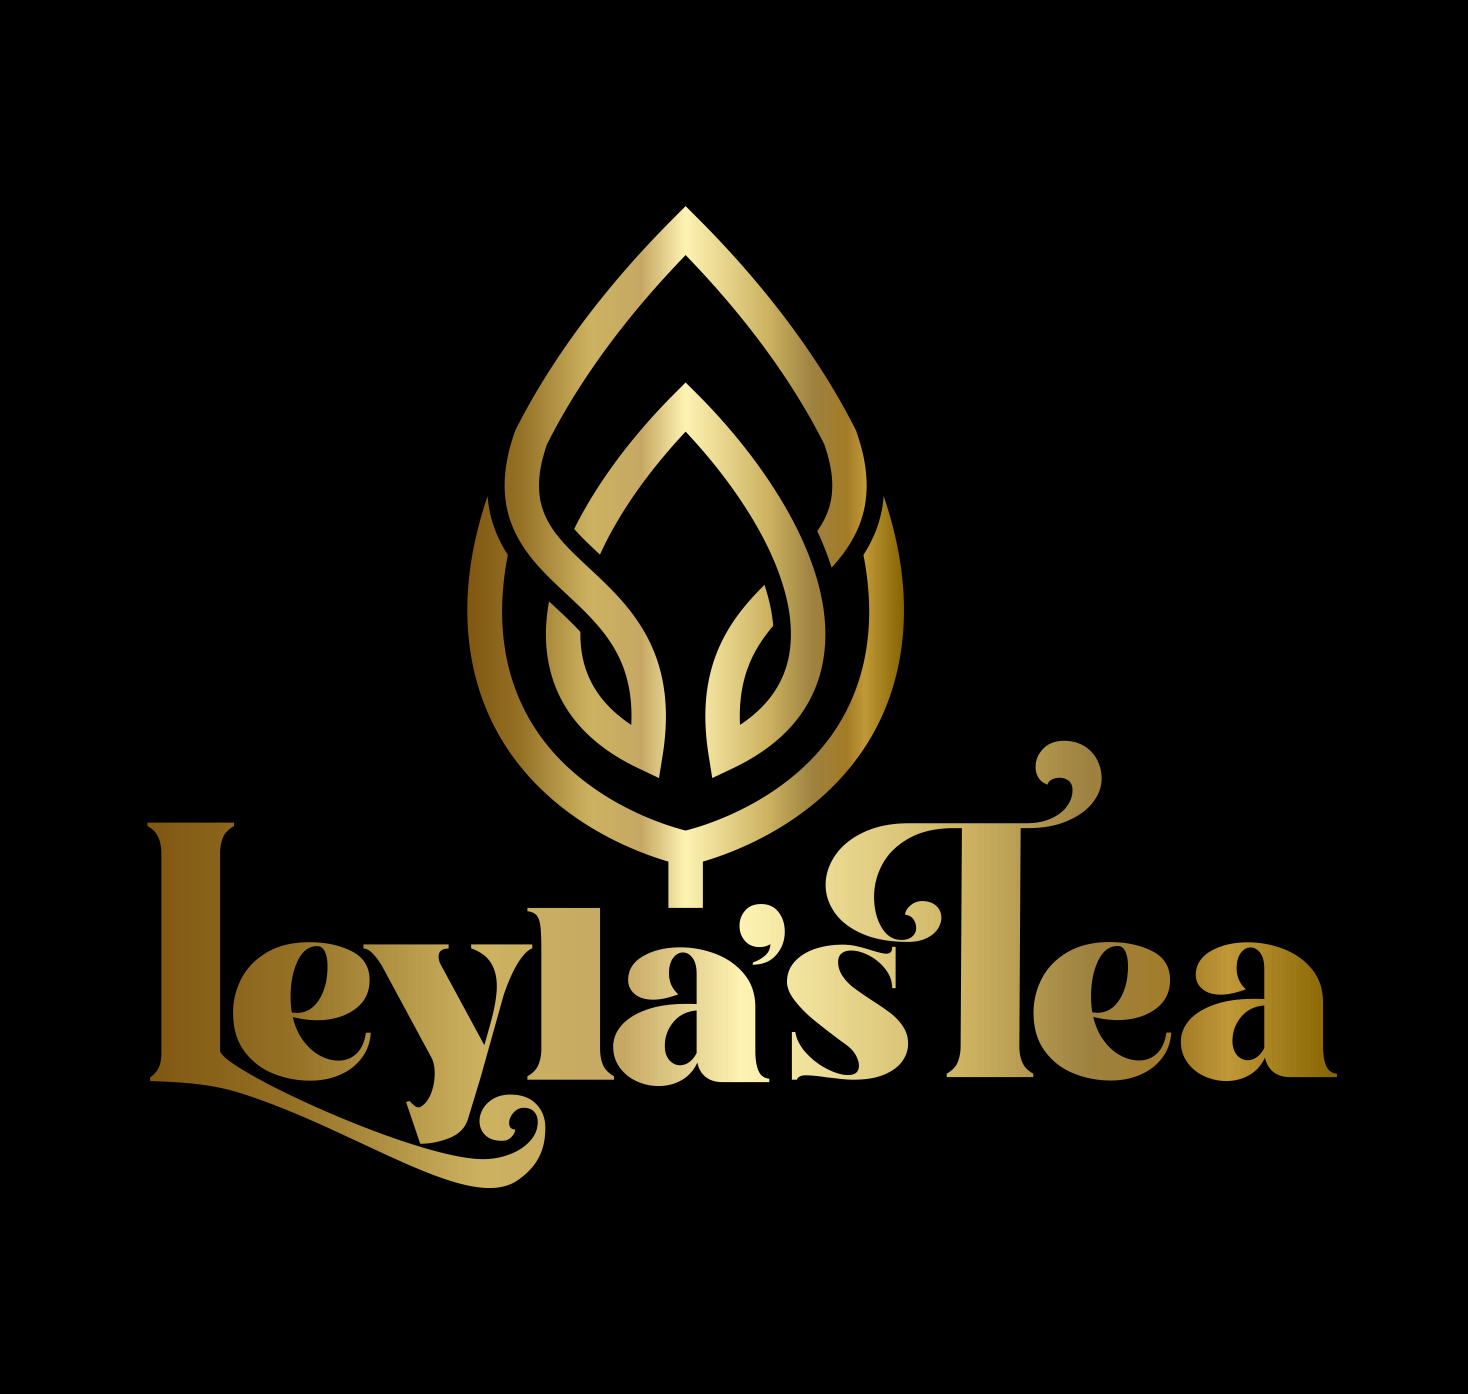 Leyla's Tea